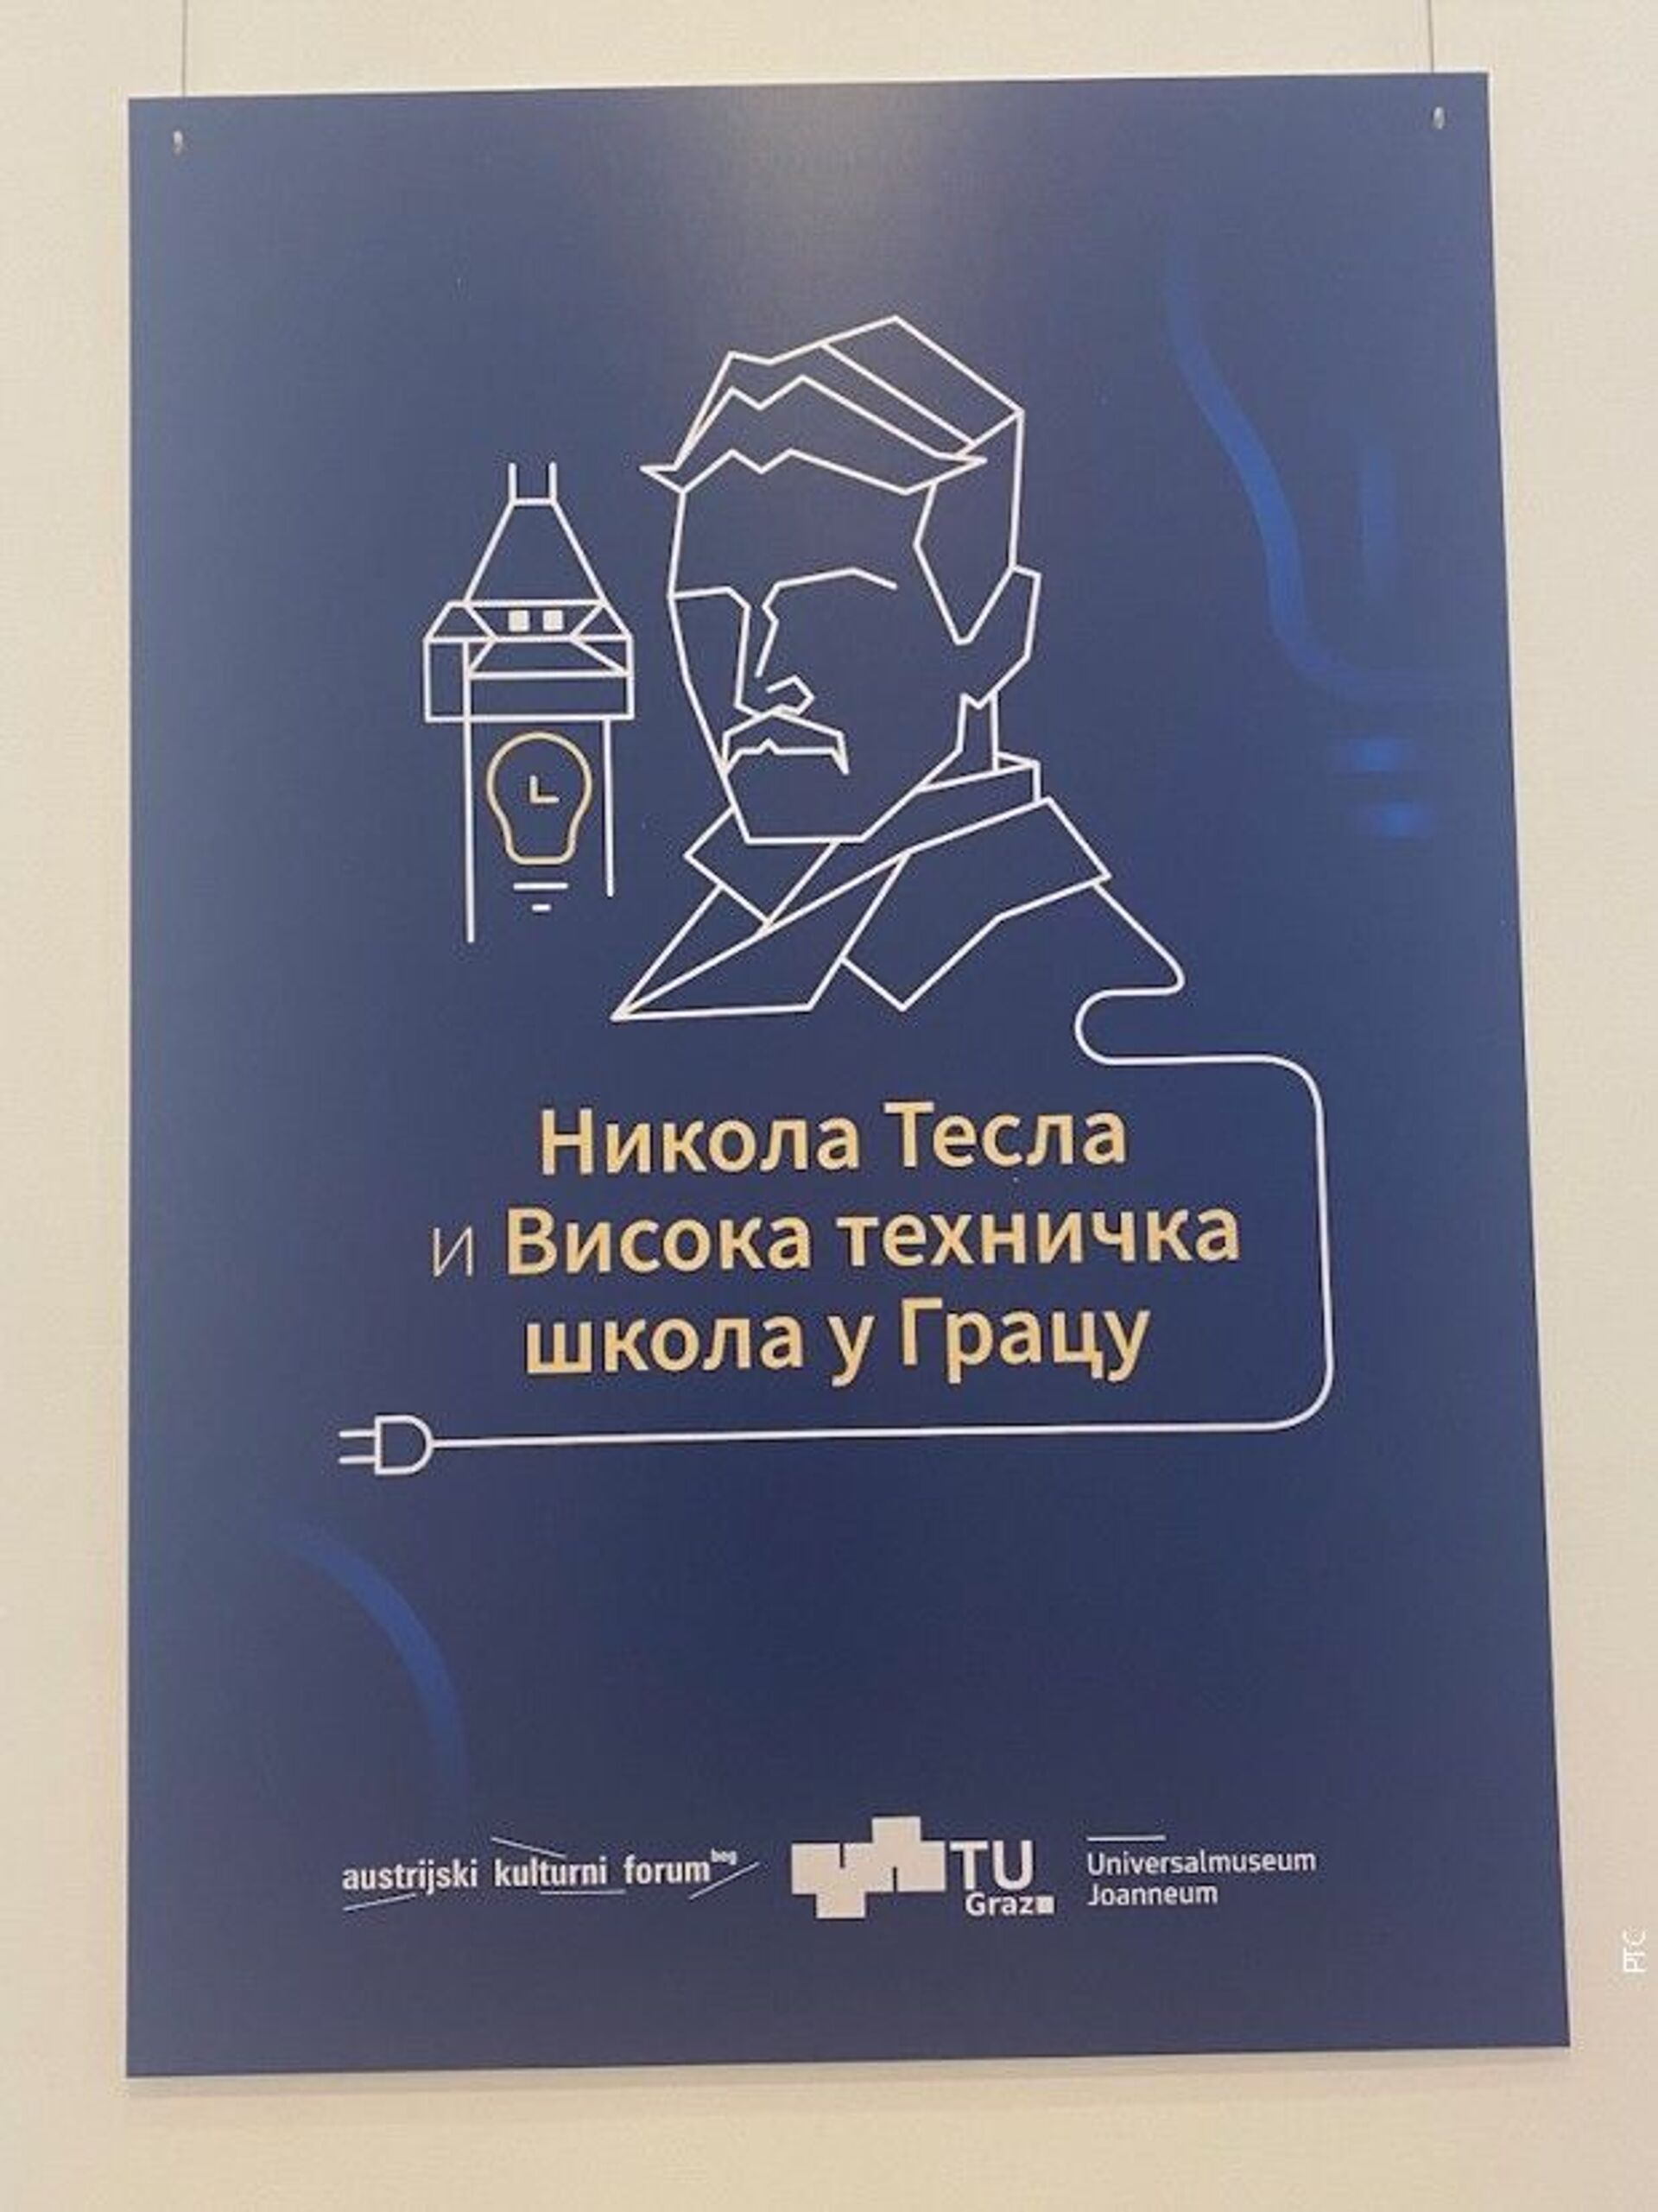 Izložba „Nikola Tesla i Visoka tehnička škola u Gracu“ biće otvorena do 24. jula - Sputnik Srbija, 1920, 13.07.2021